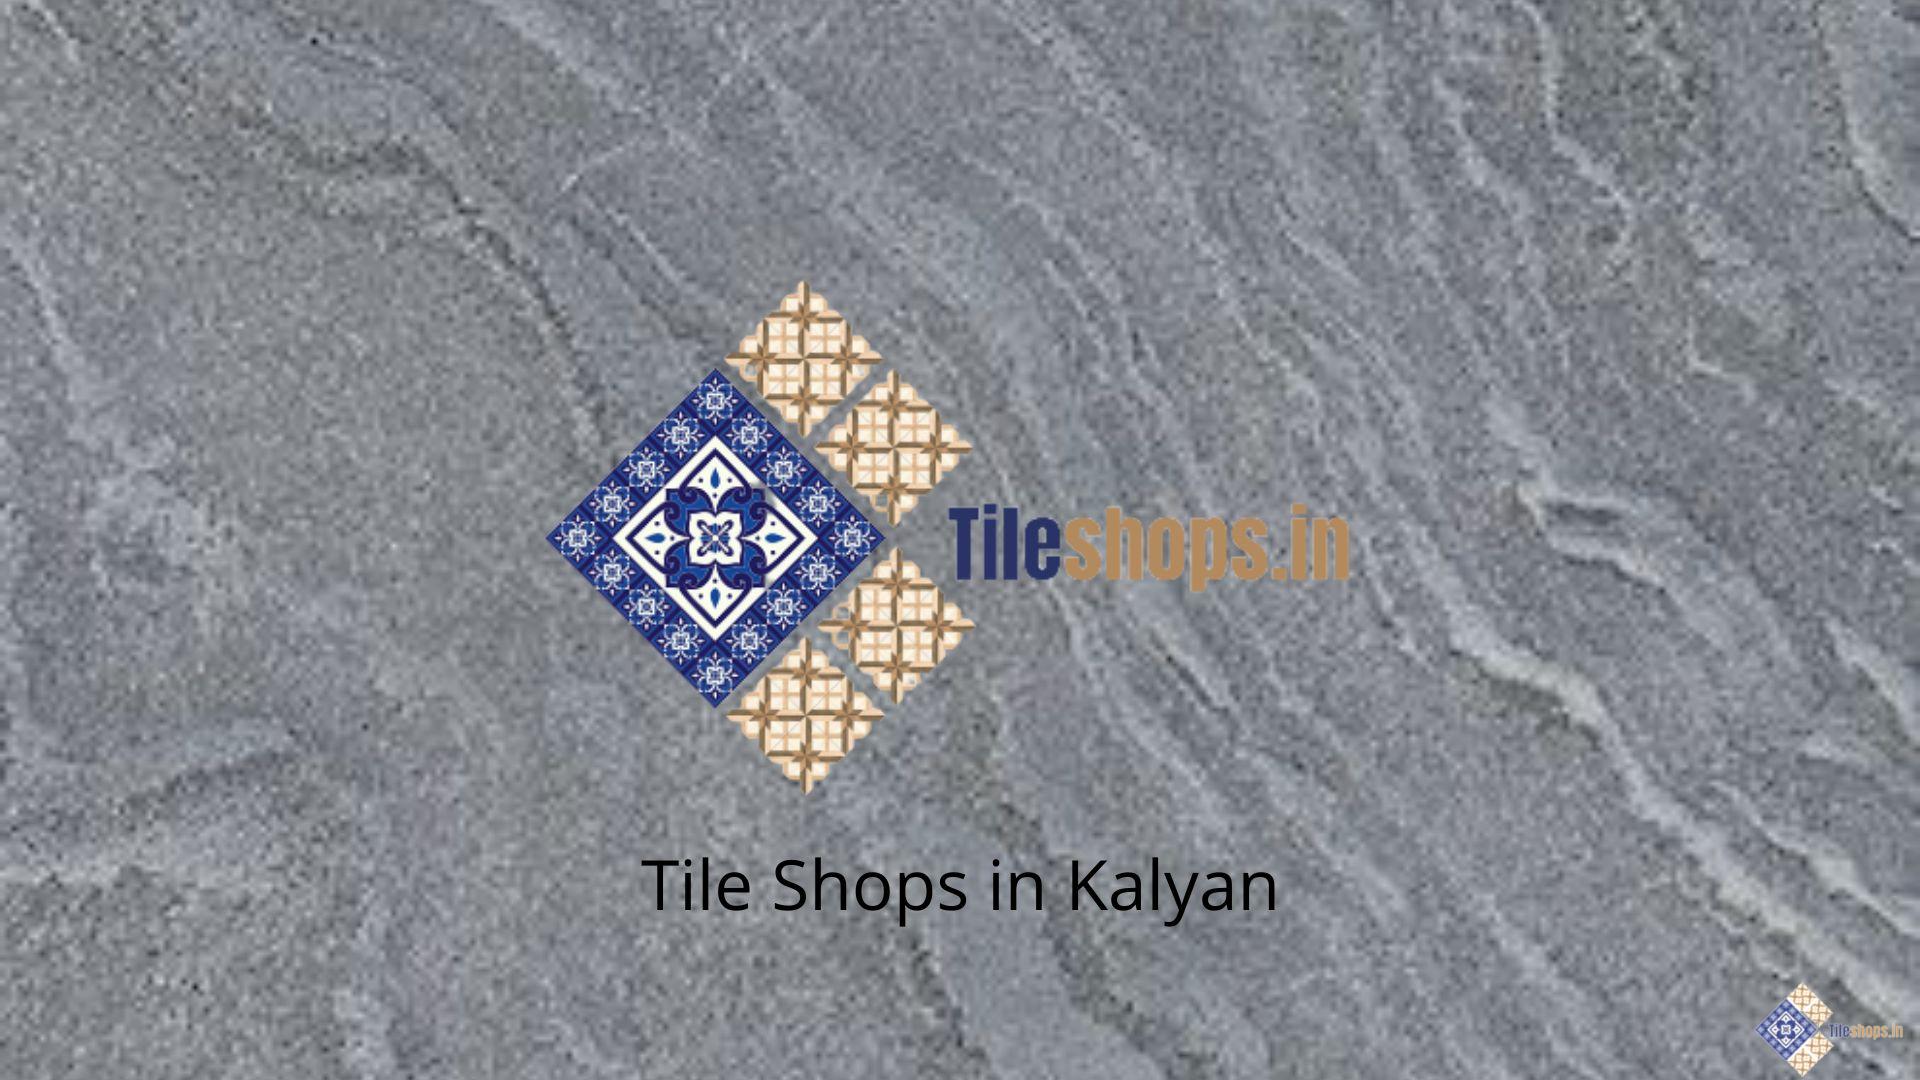 Tile Shops in Kalyan